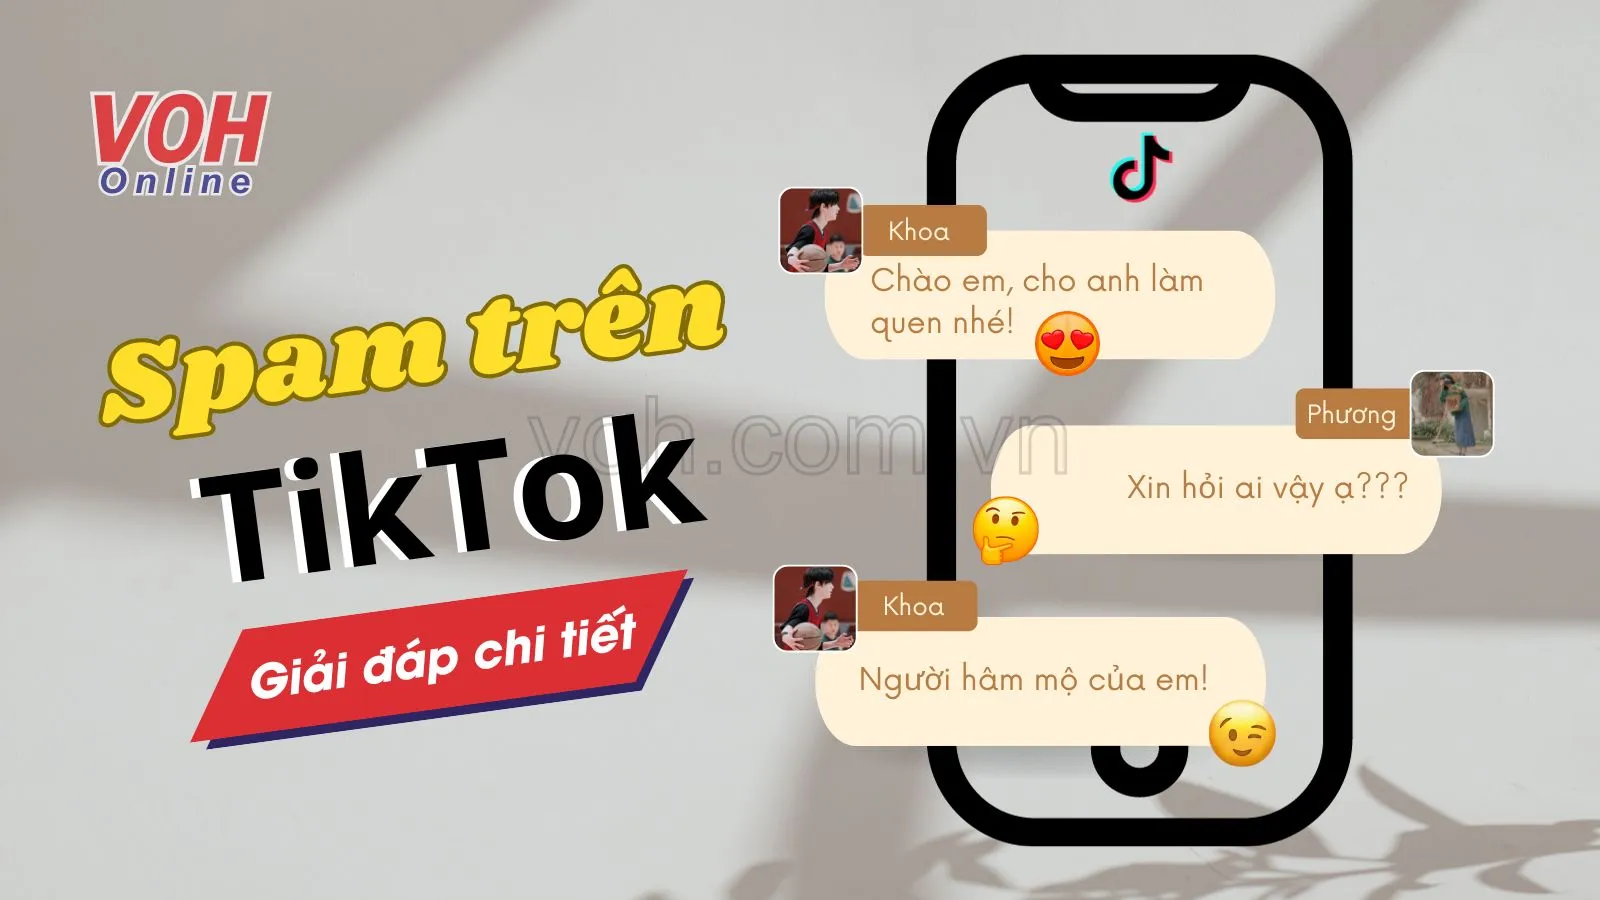 Spam trên TikTok là gì? Cách xử lý Spam TikTok đơn giản nhất